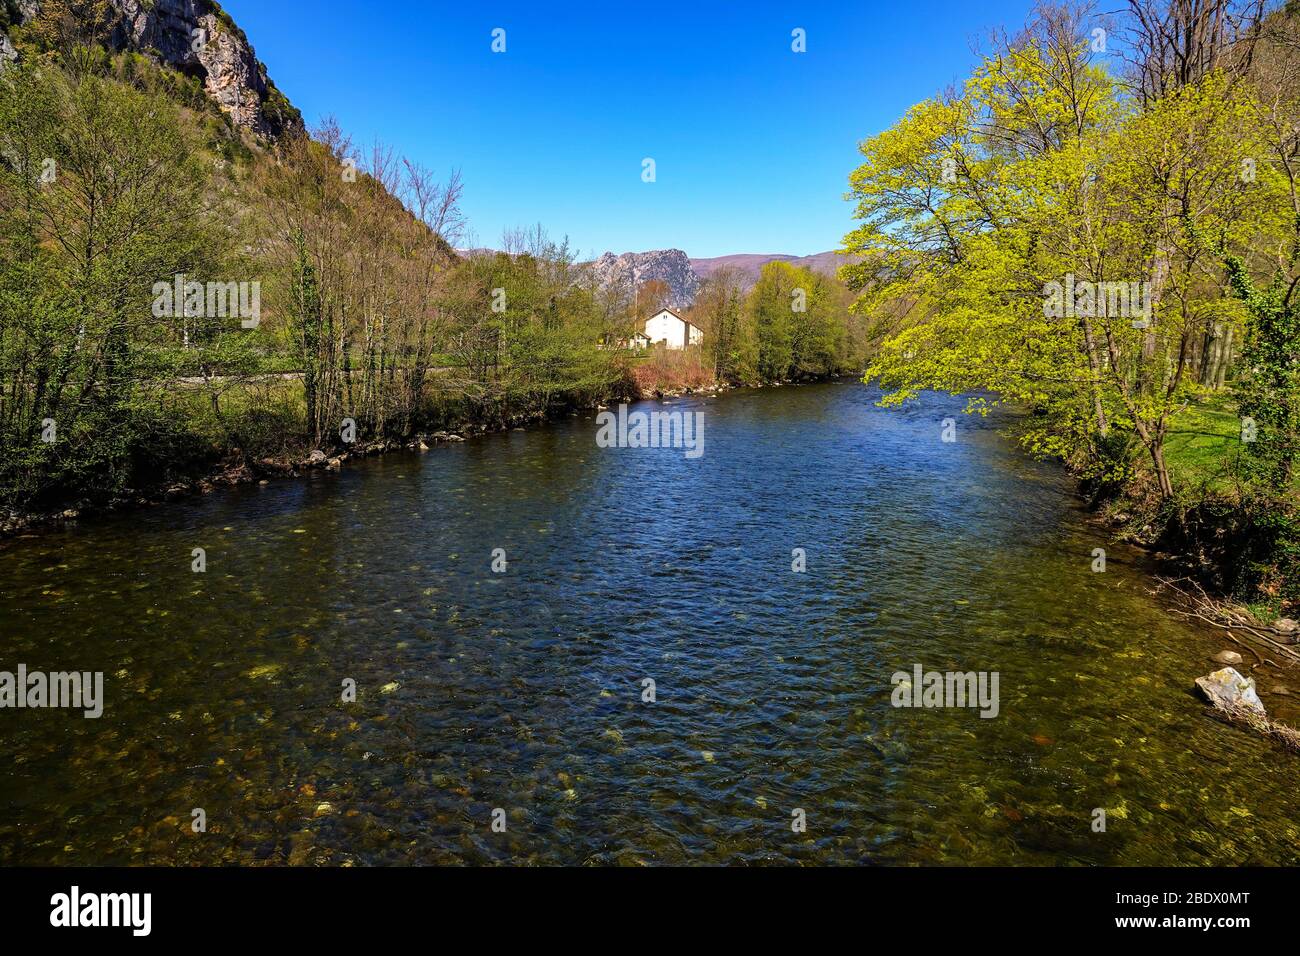 Der Fluss Ariege unter blauem Himmel, Ornolac Ussat les Bains, Ariege, Französische Pyrenäen, Frankreich Stockfoto